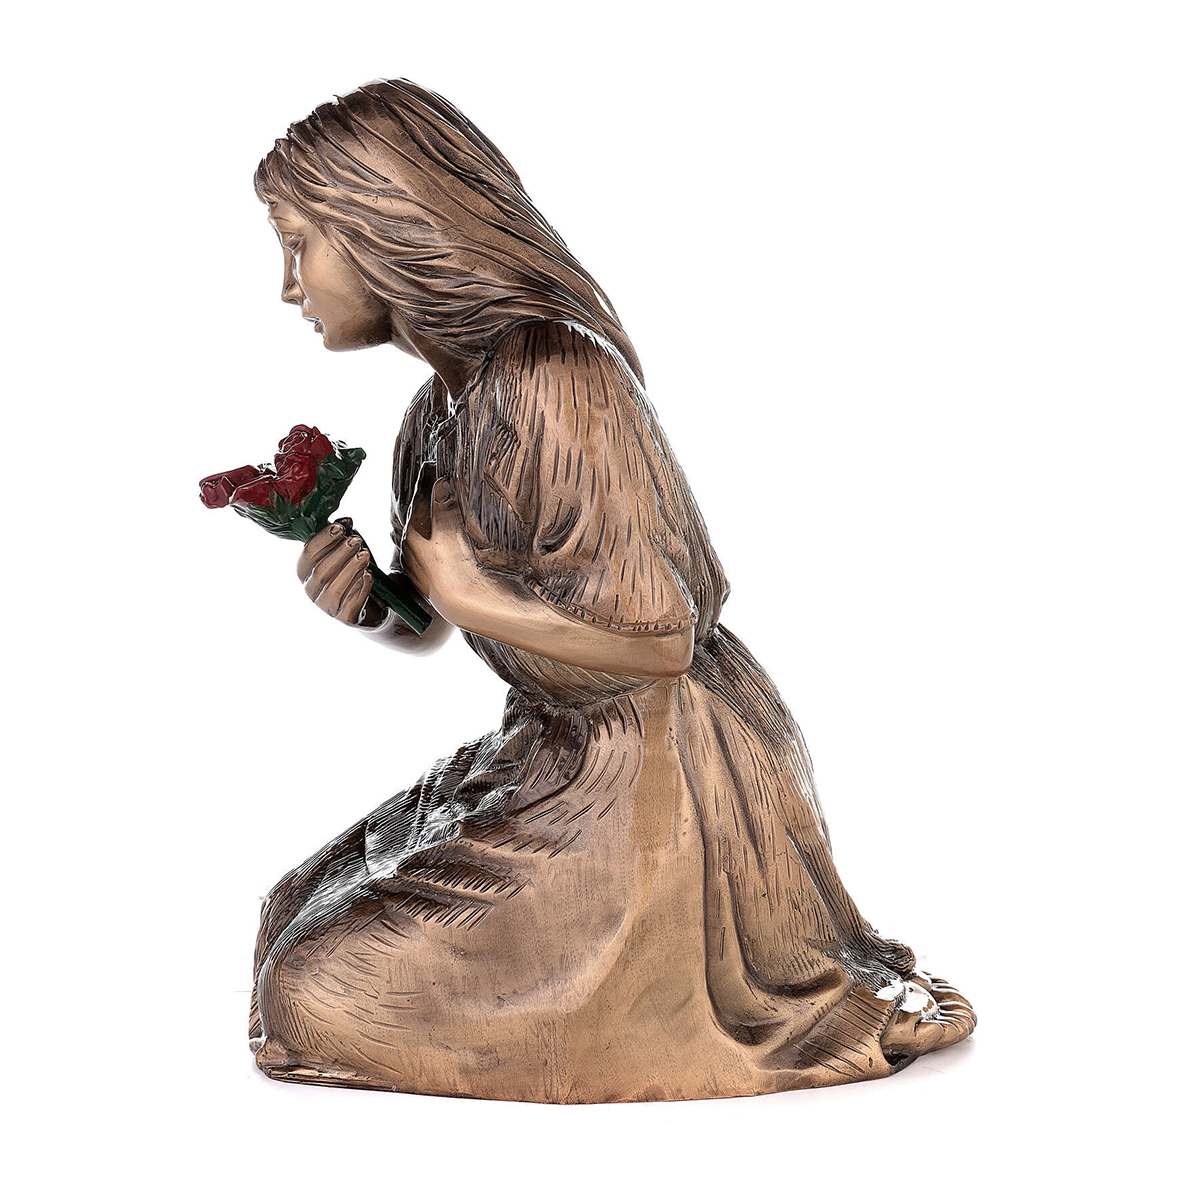 Kneeling Woman Sculpture